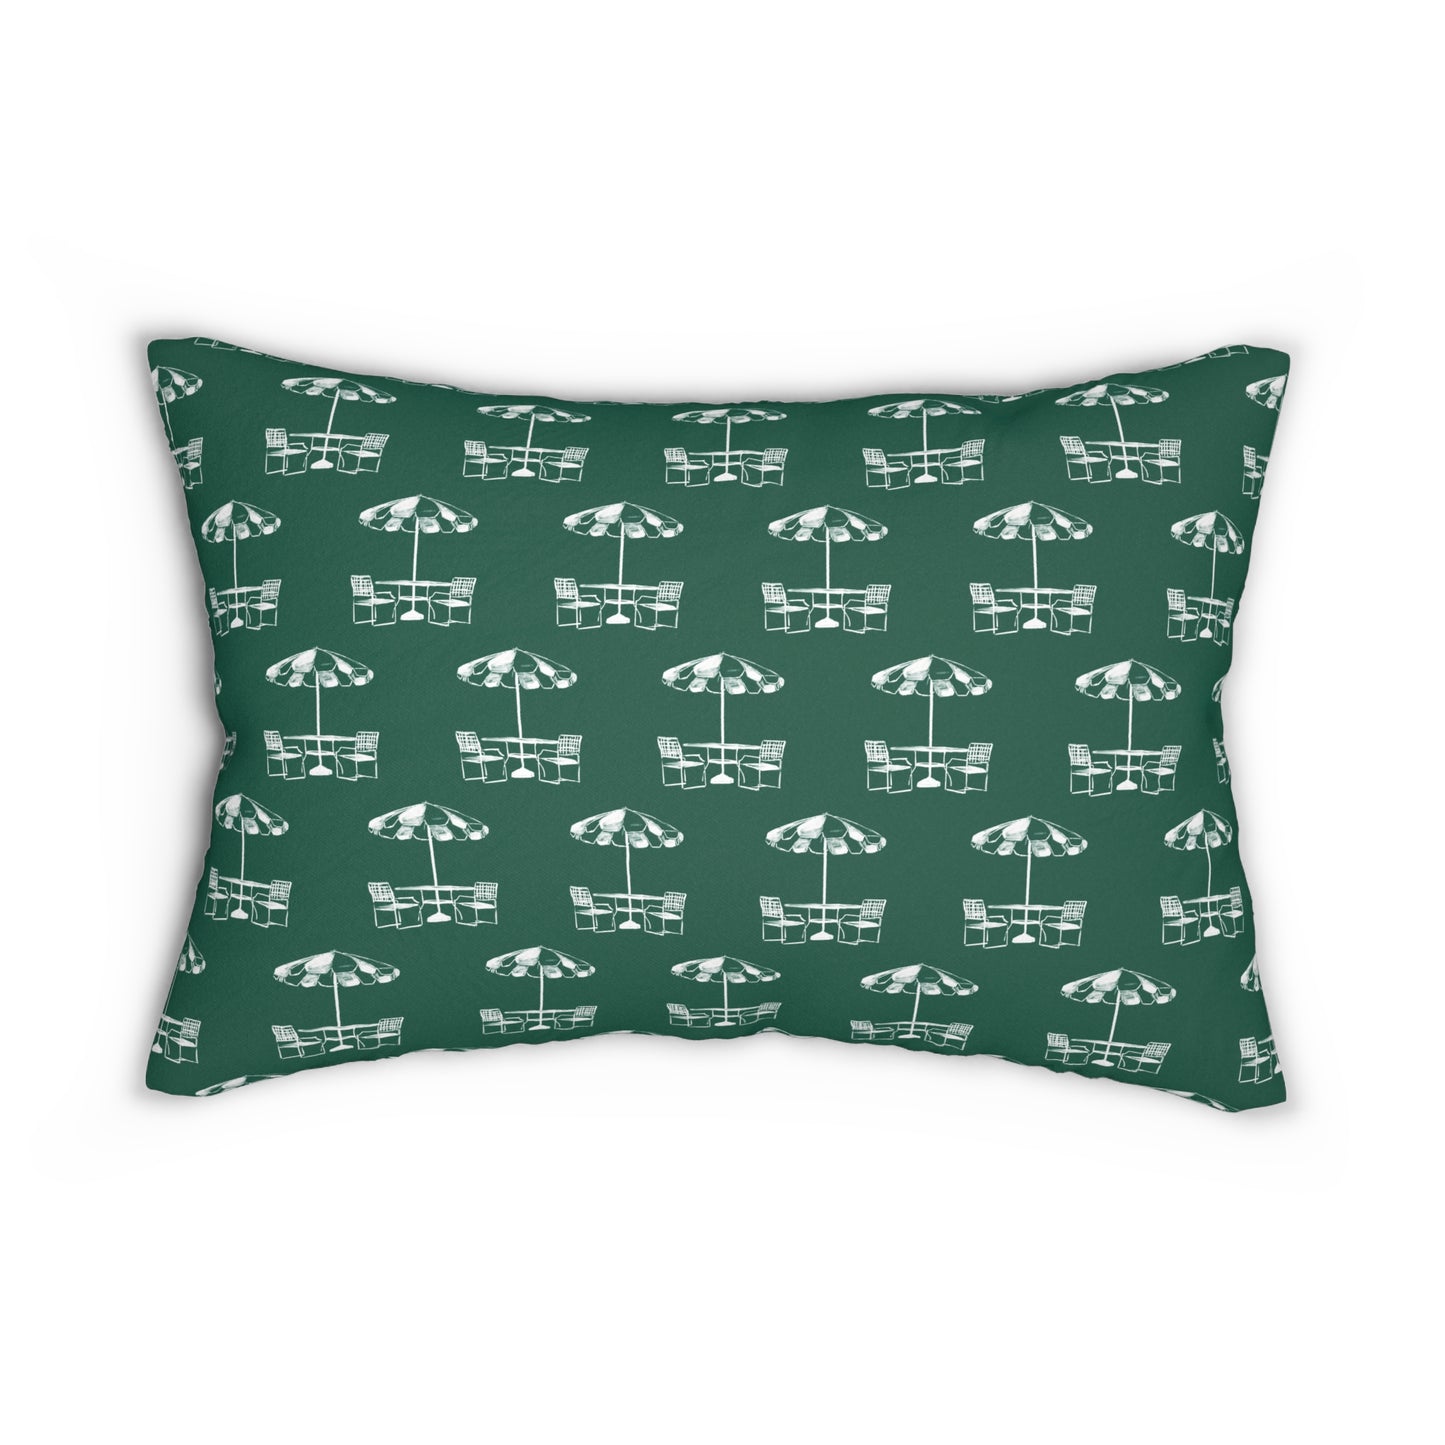 Green Umbrella Lumbar Pillow